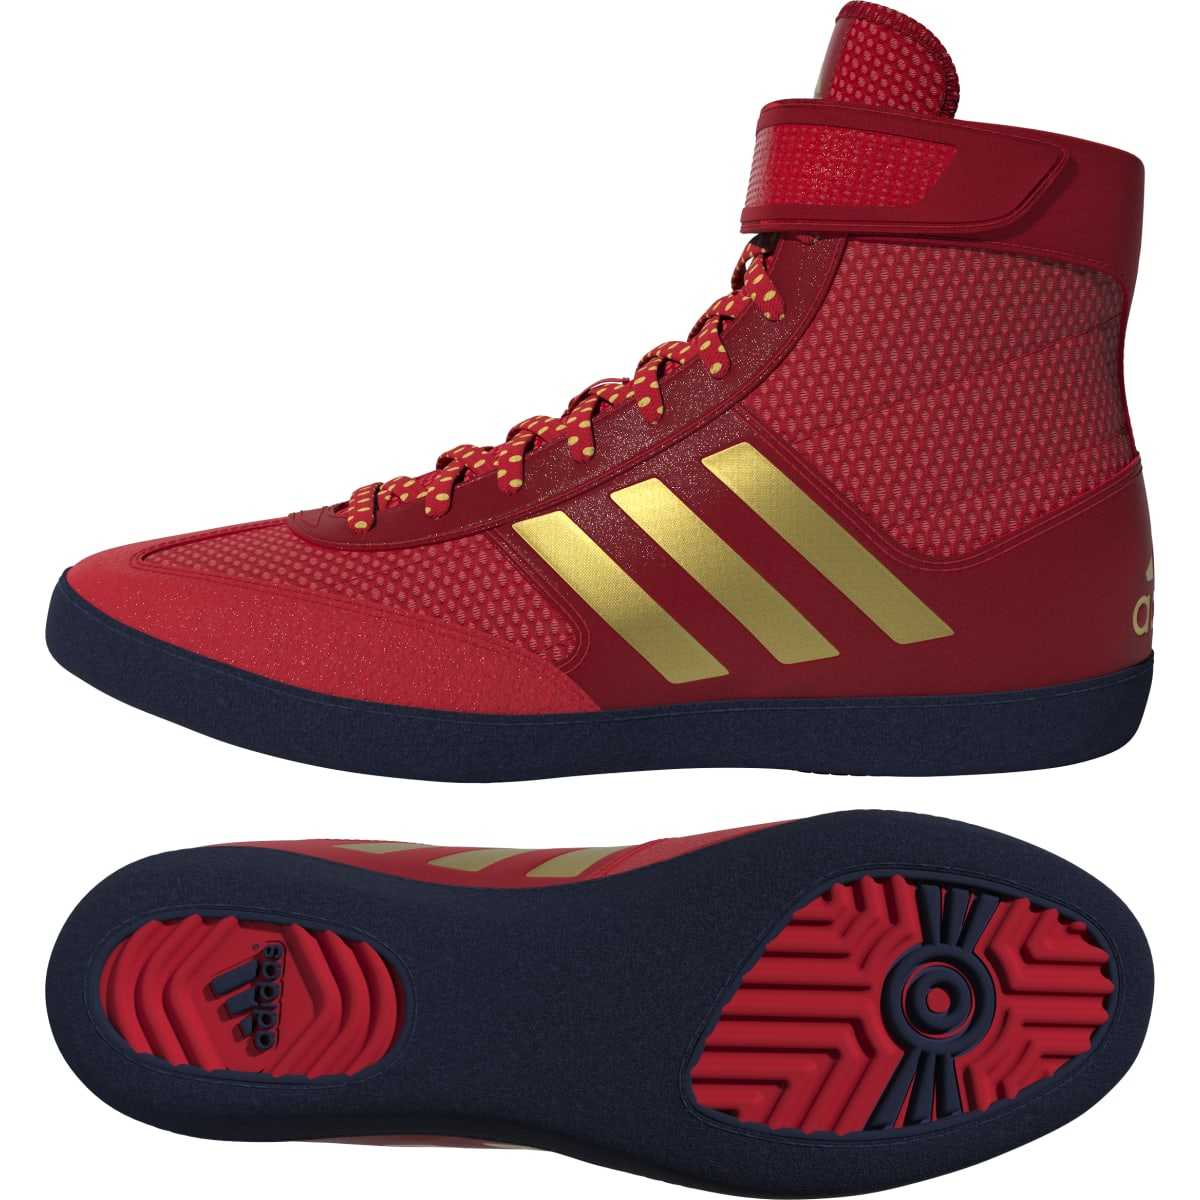 Conciencia Mendicidad estoy sediento Adidas 224 Combat Speed 5 Wrestling Shoes - Red Matelic Gold Navy